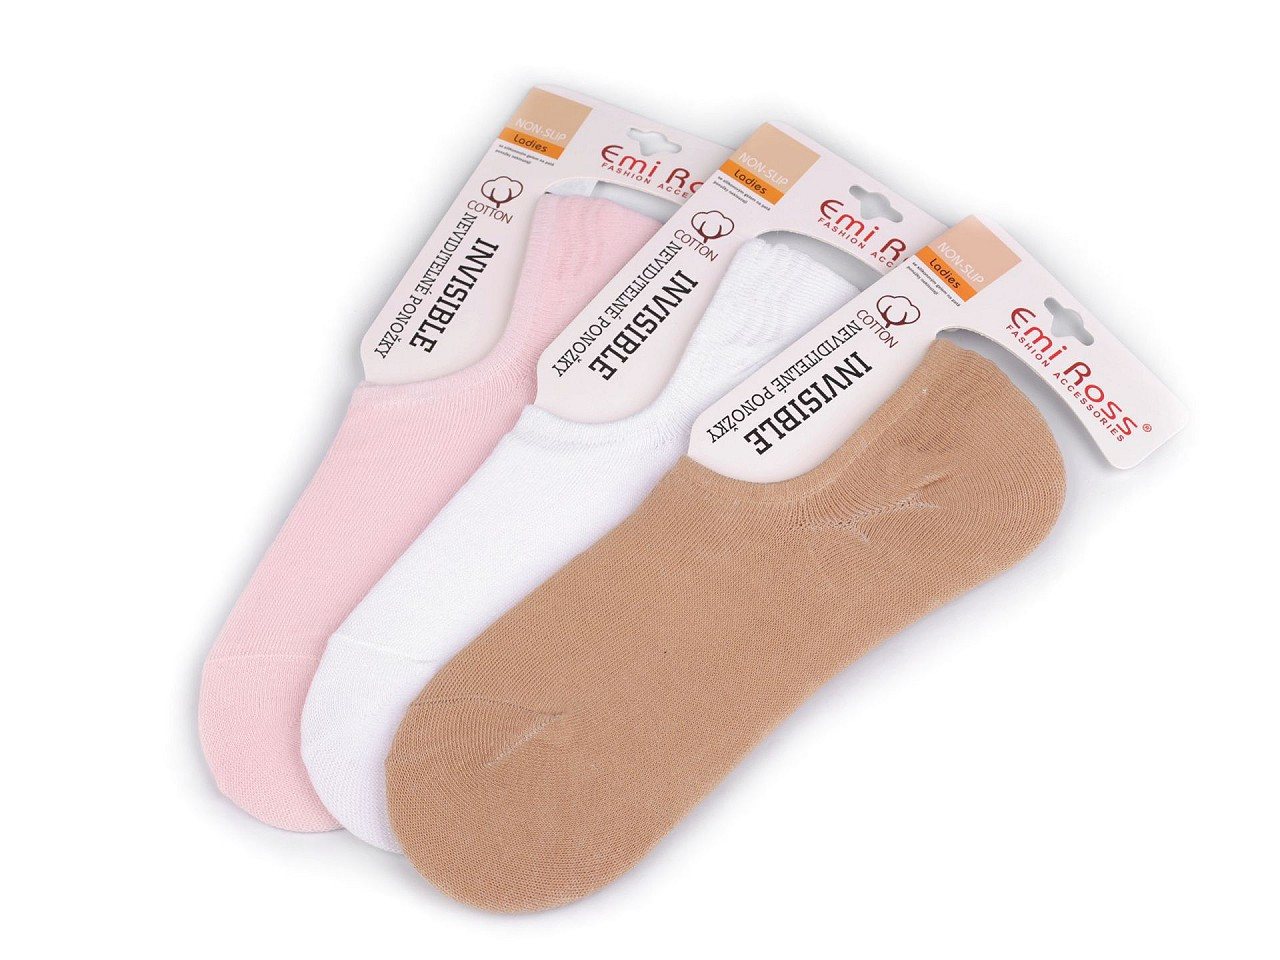 Dámské bavlněné ponožky do tenisek Emi Ross, barva 1 (vel. 35-40) mix